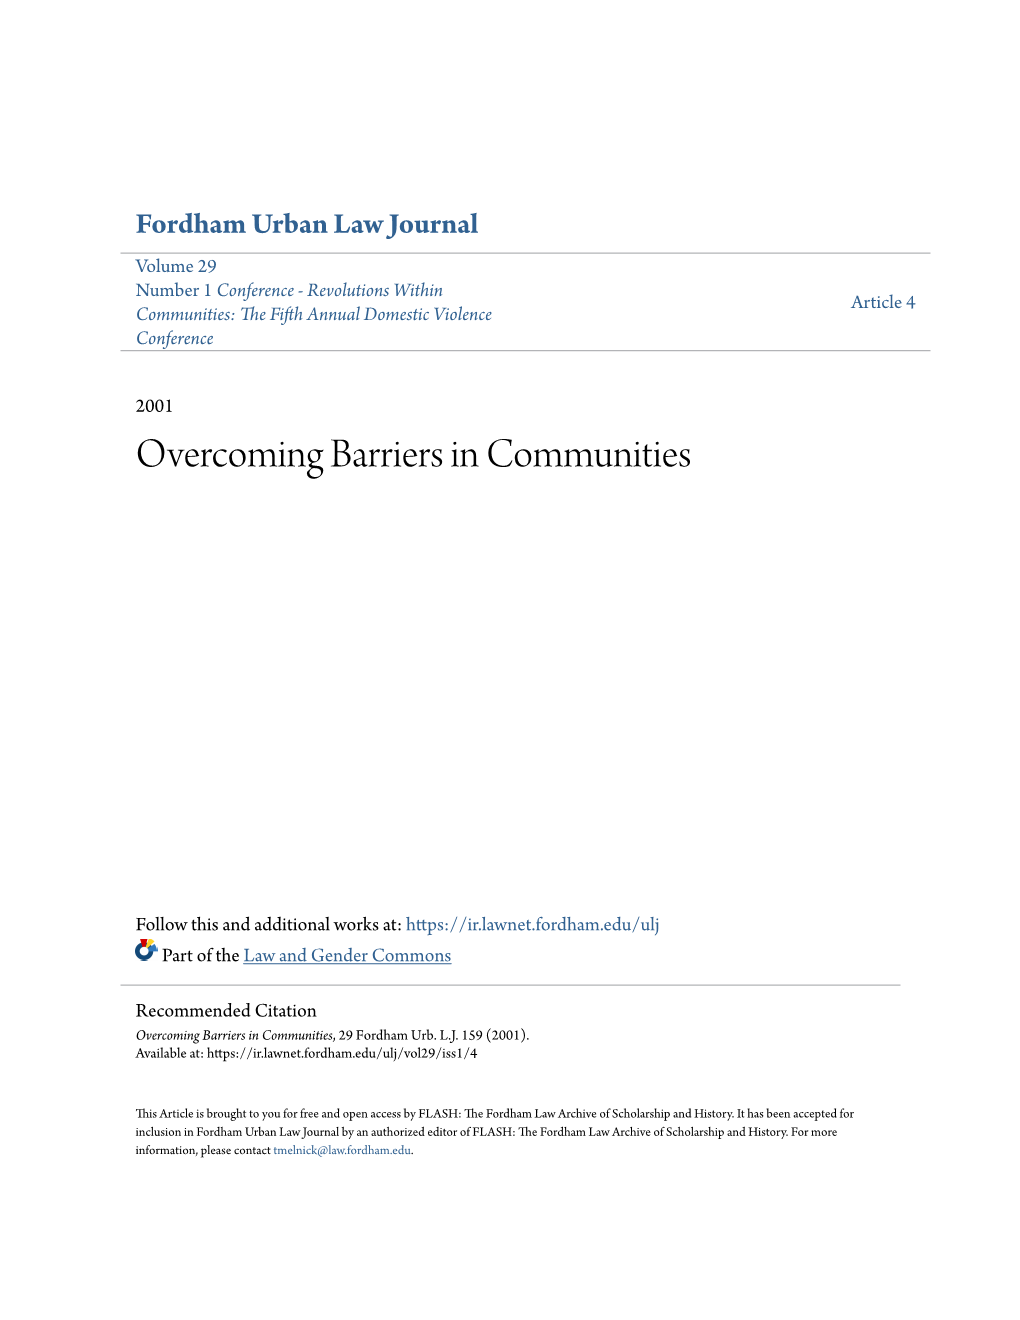 Overcoming Barriers in Communities